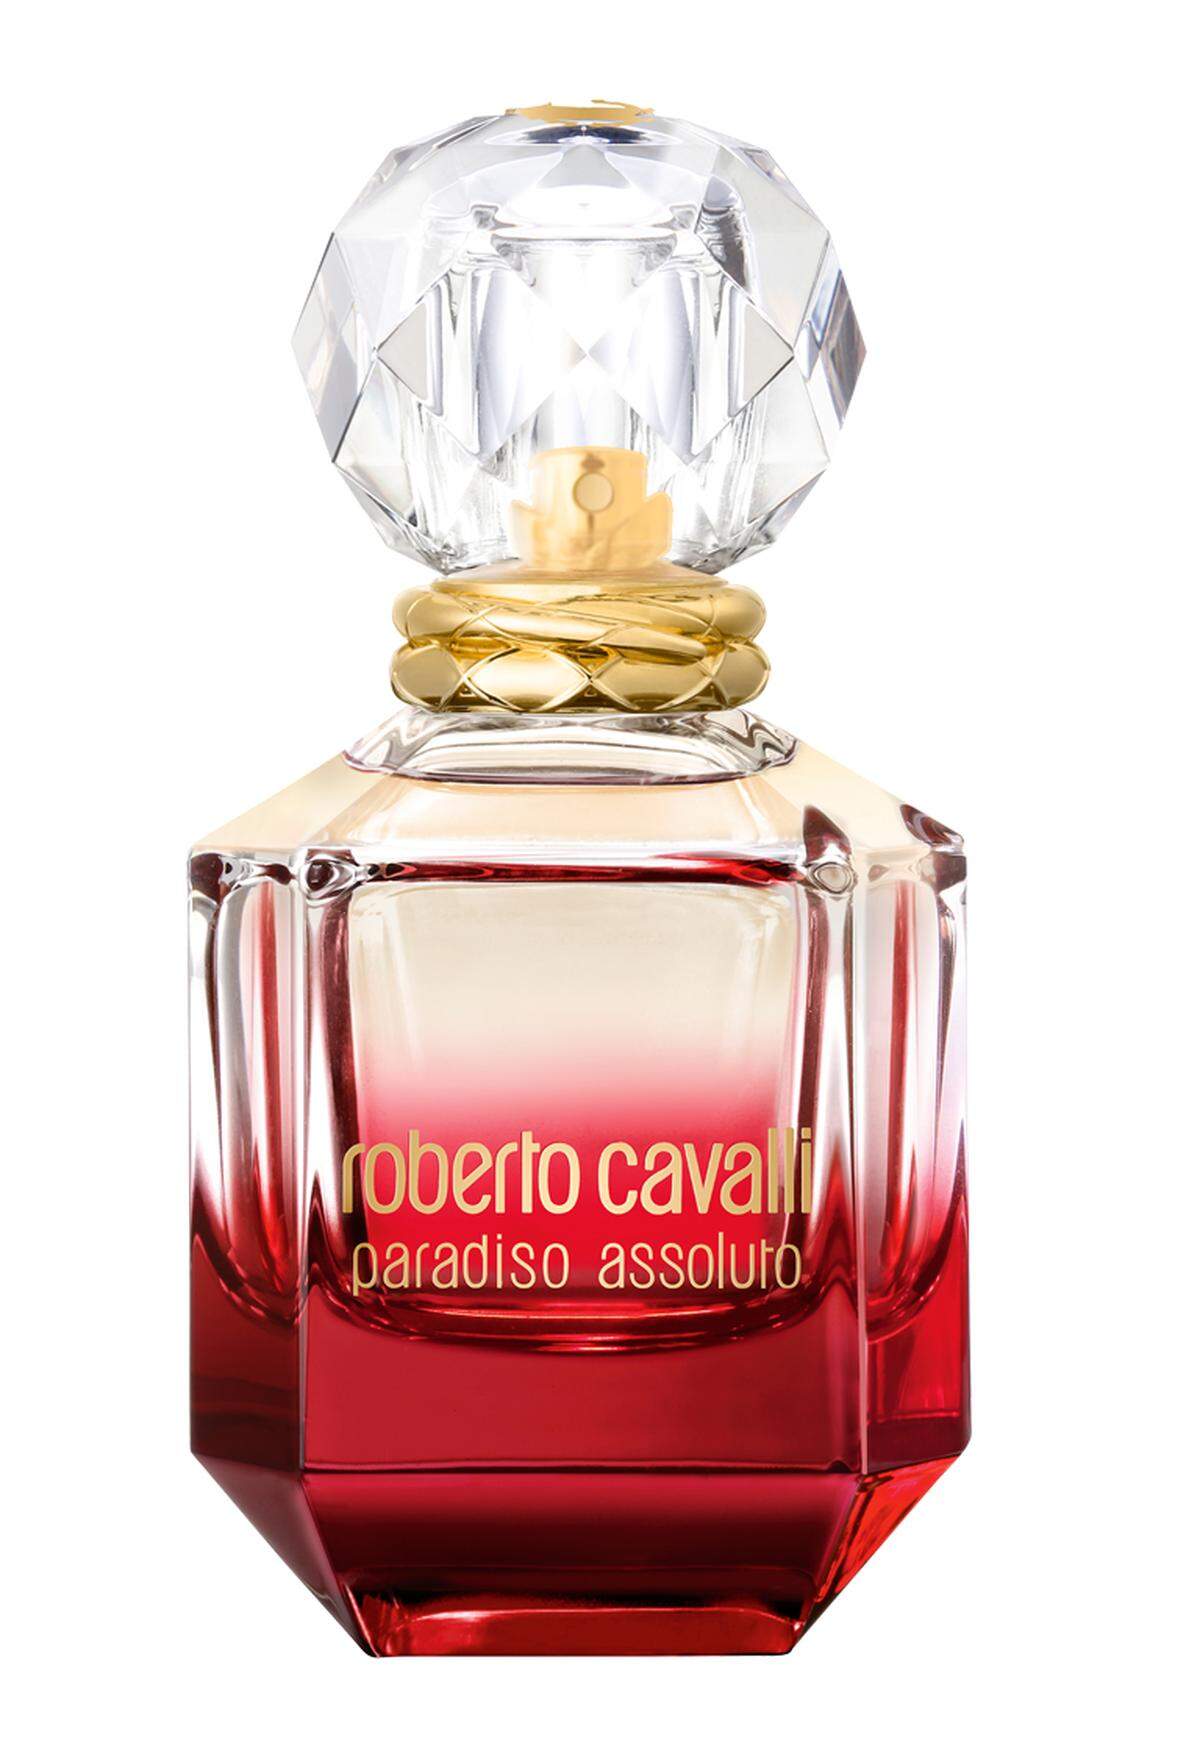 Parfum „Paradiso Assoluto“ von Roberto Cavalli, 30 ml, 50 Euro, im Fachhandel erhältlich